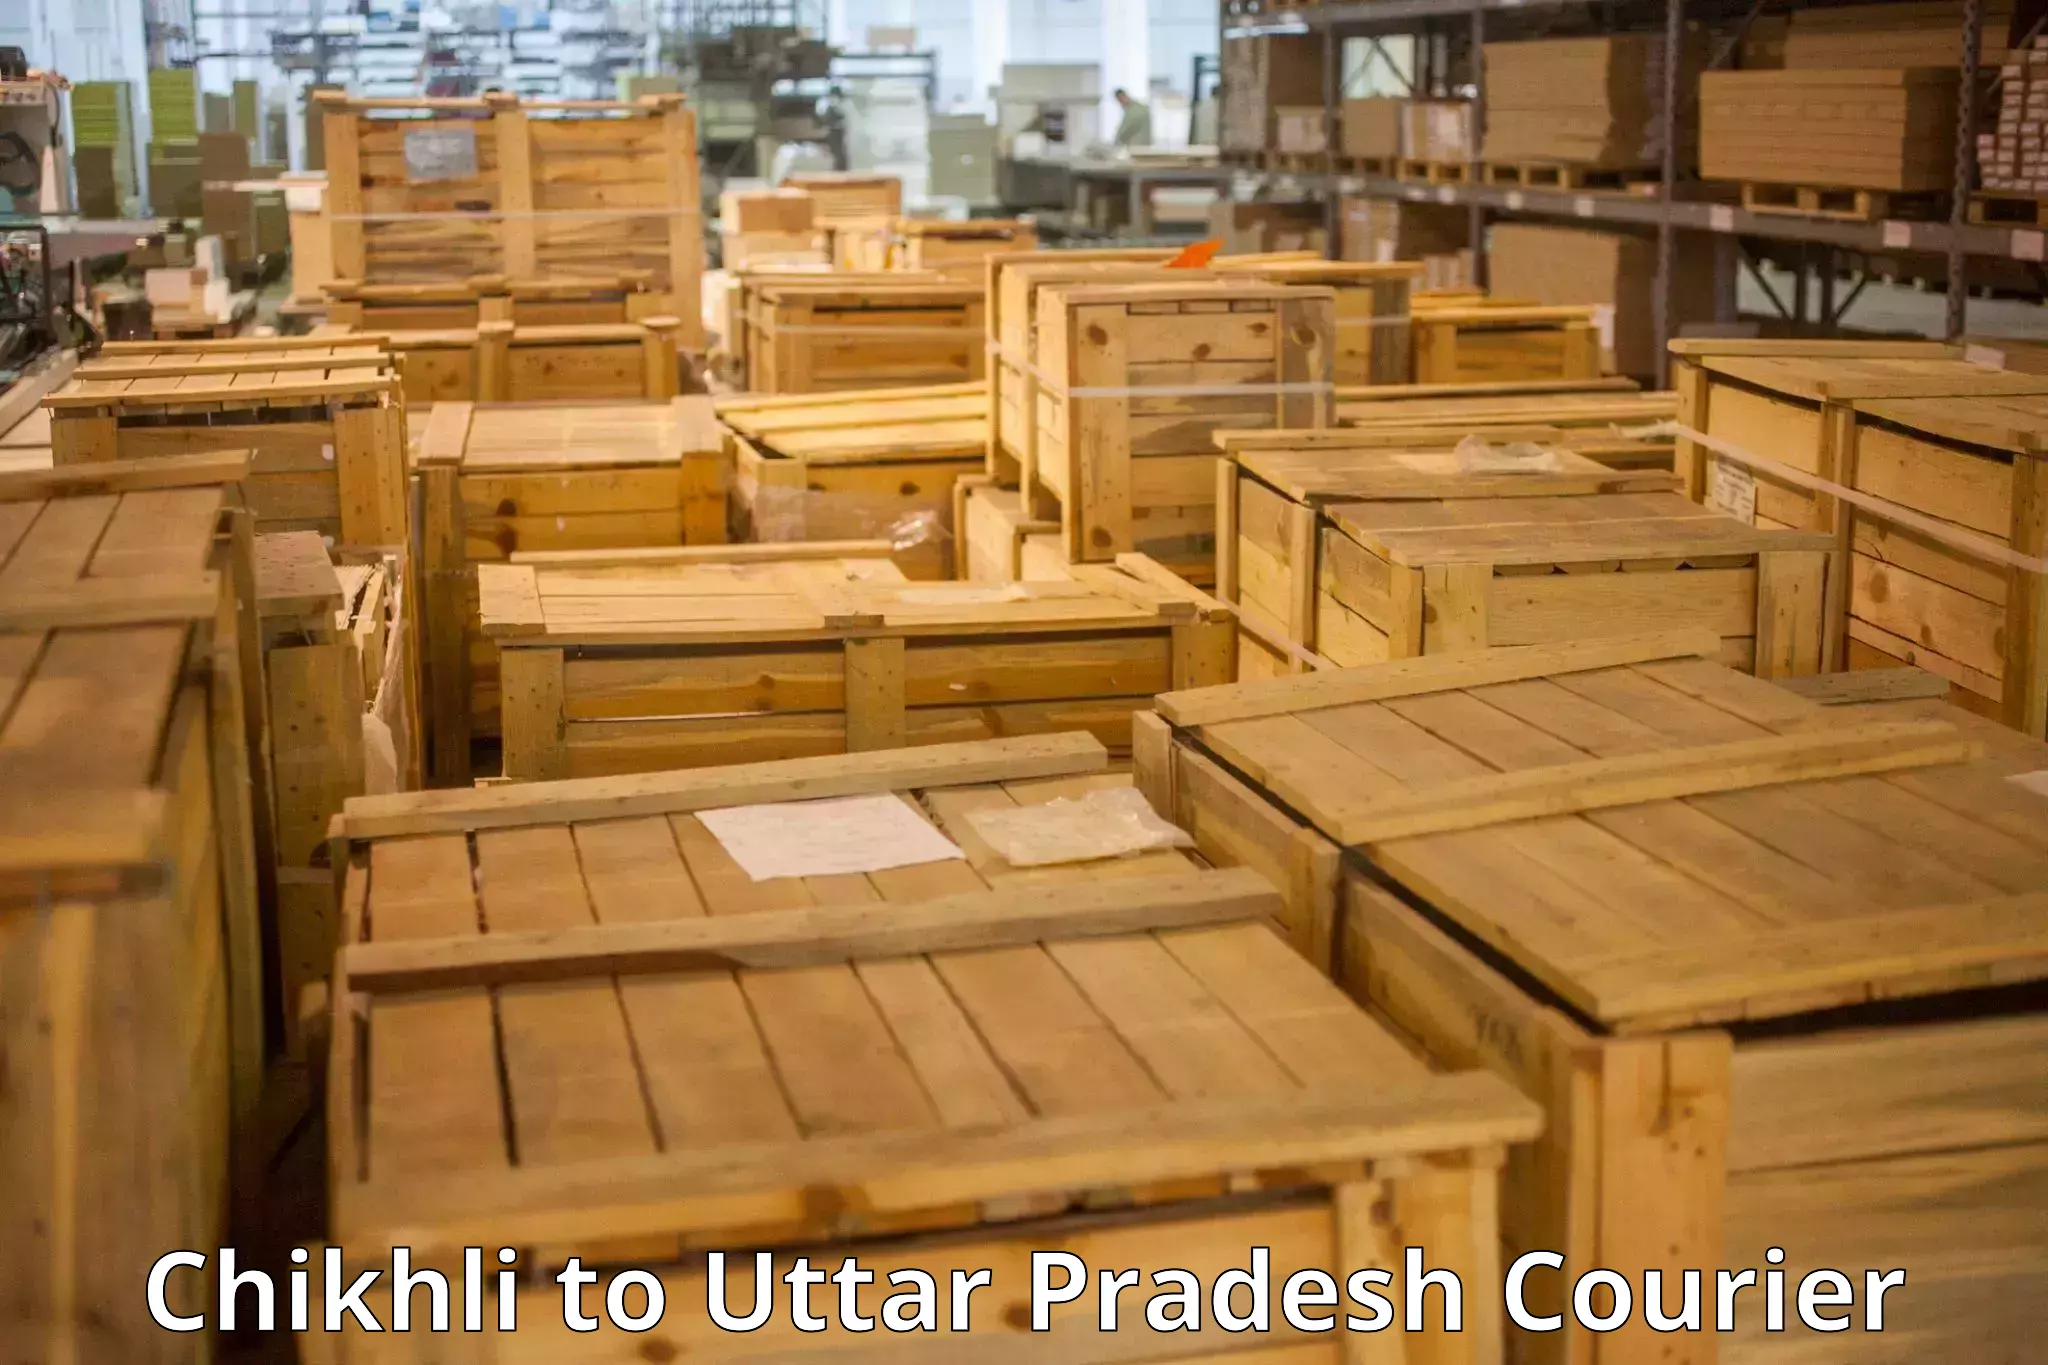 Luggage shipping estimate Chikhli to Kulpahar